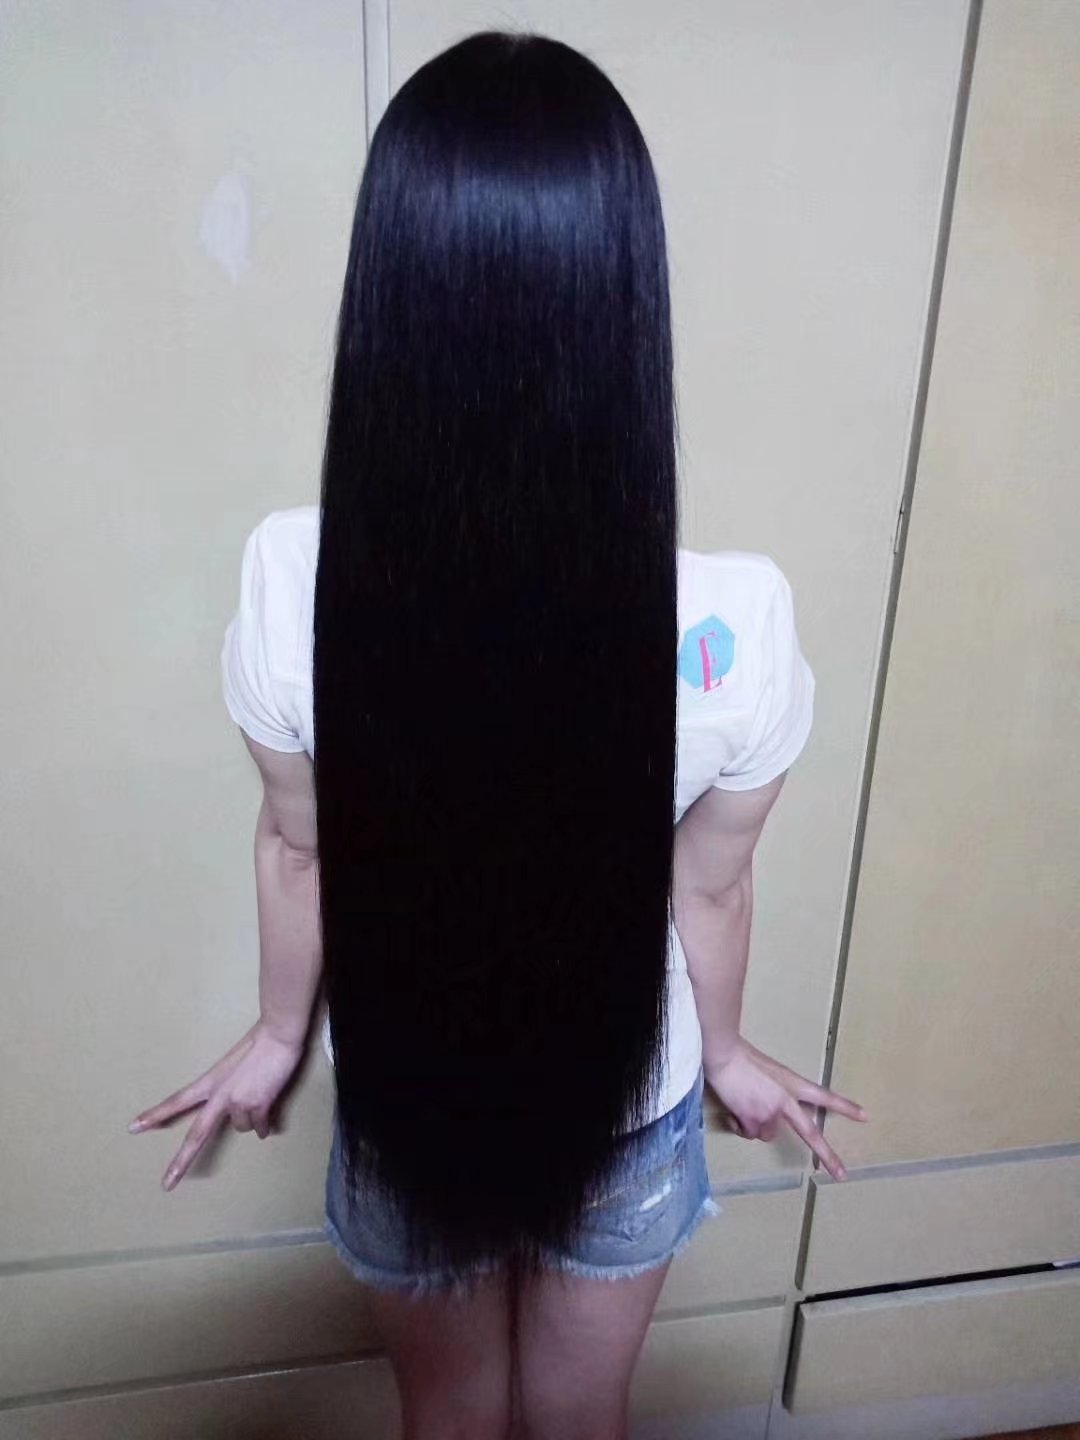 xiaoyangzeihuai shew her new long hair photos in 2018 March